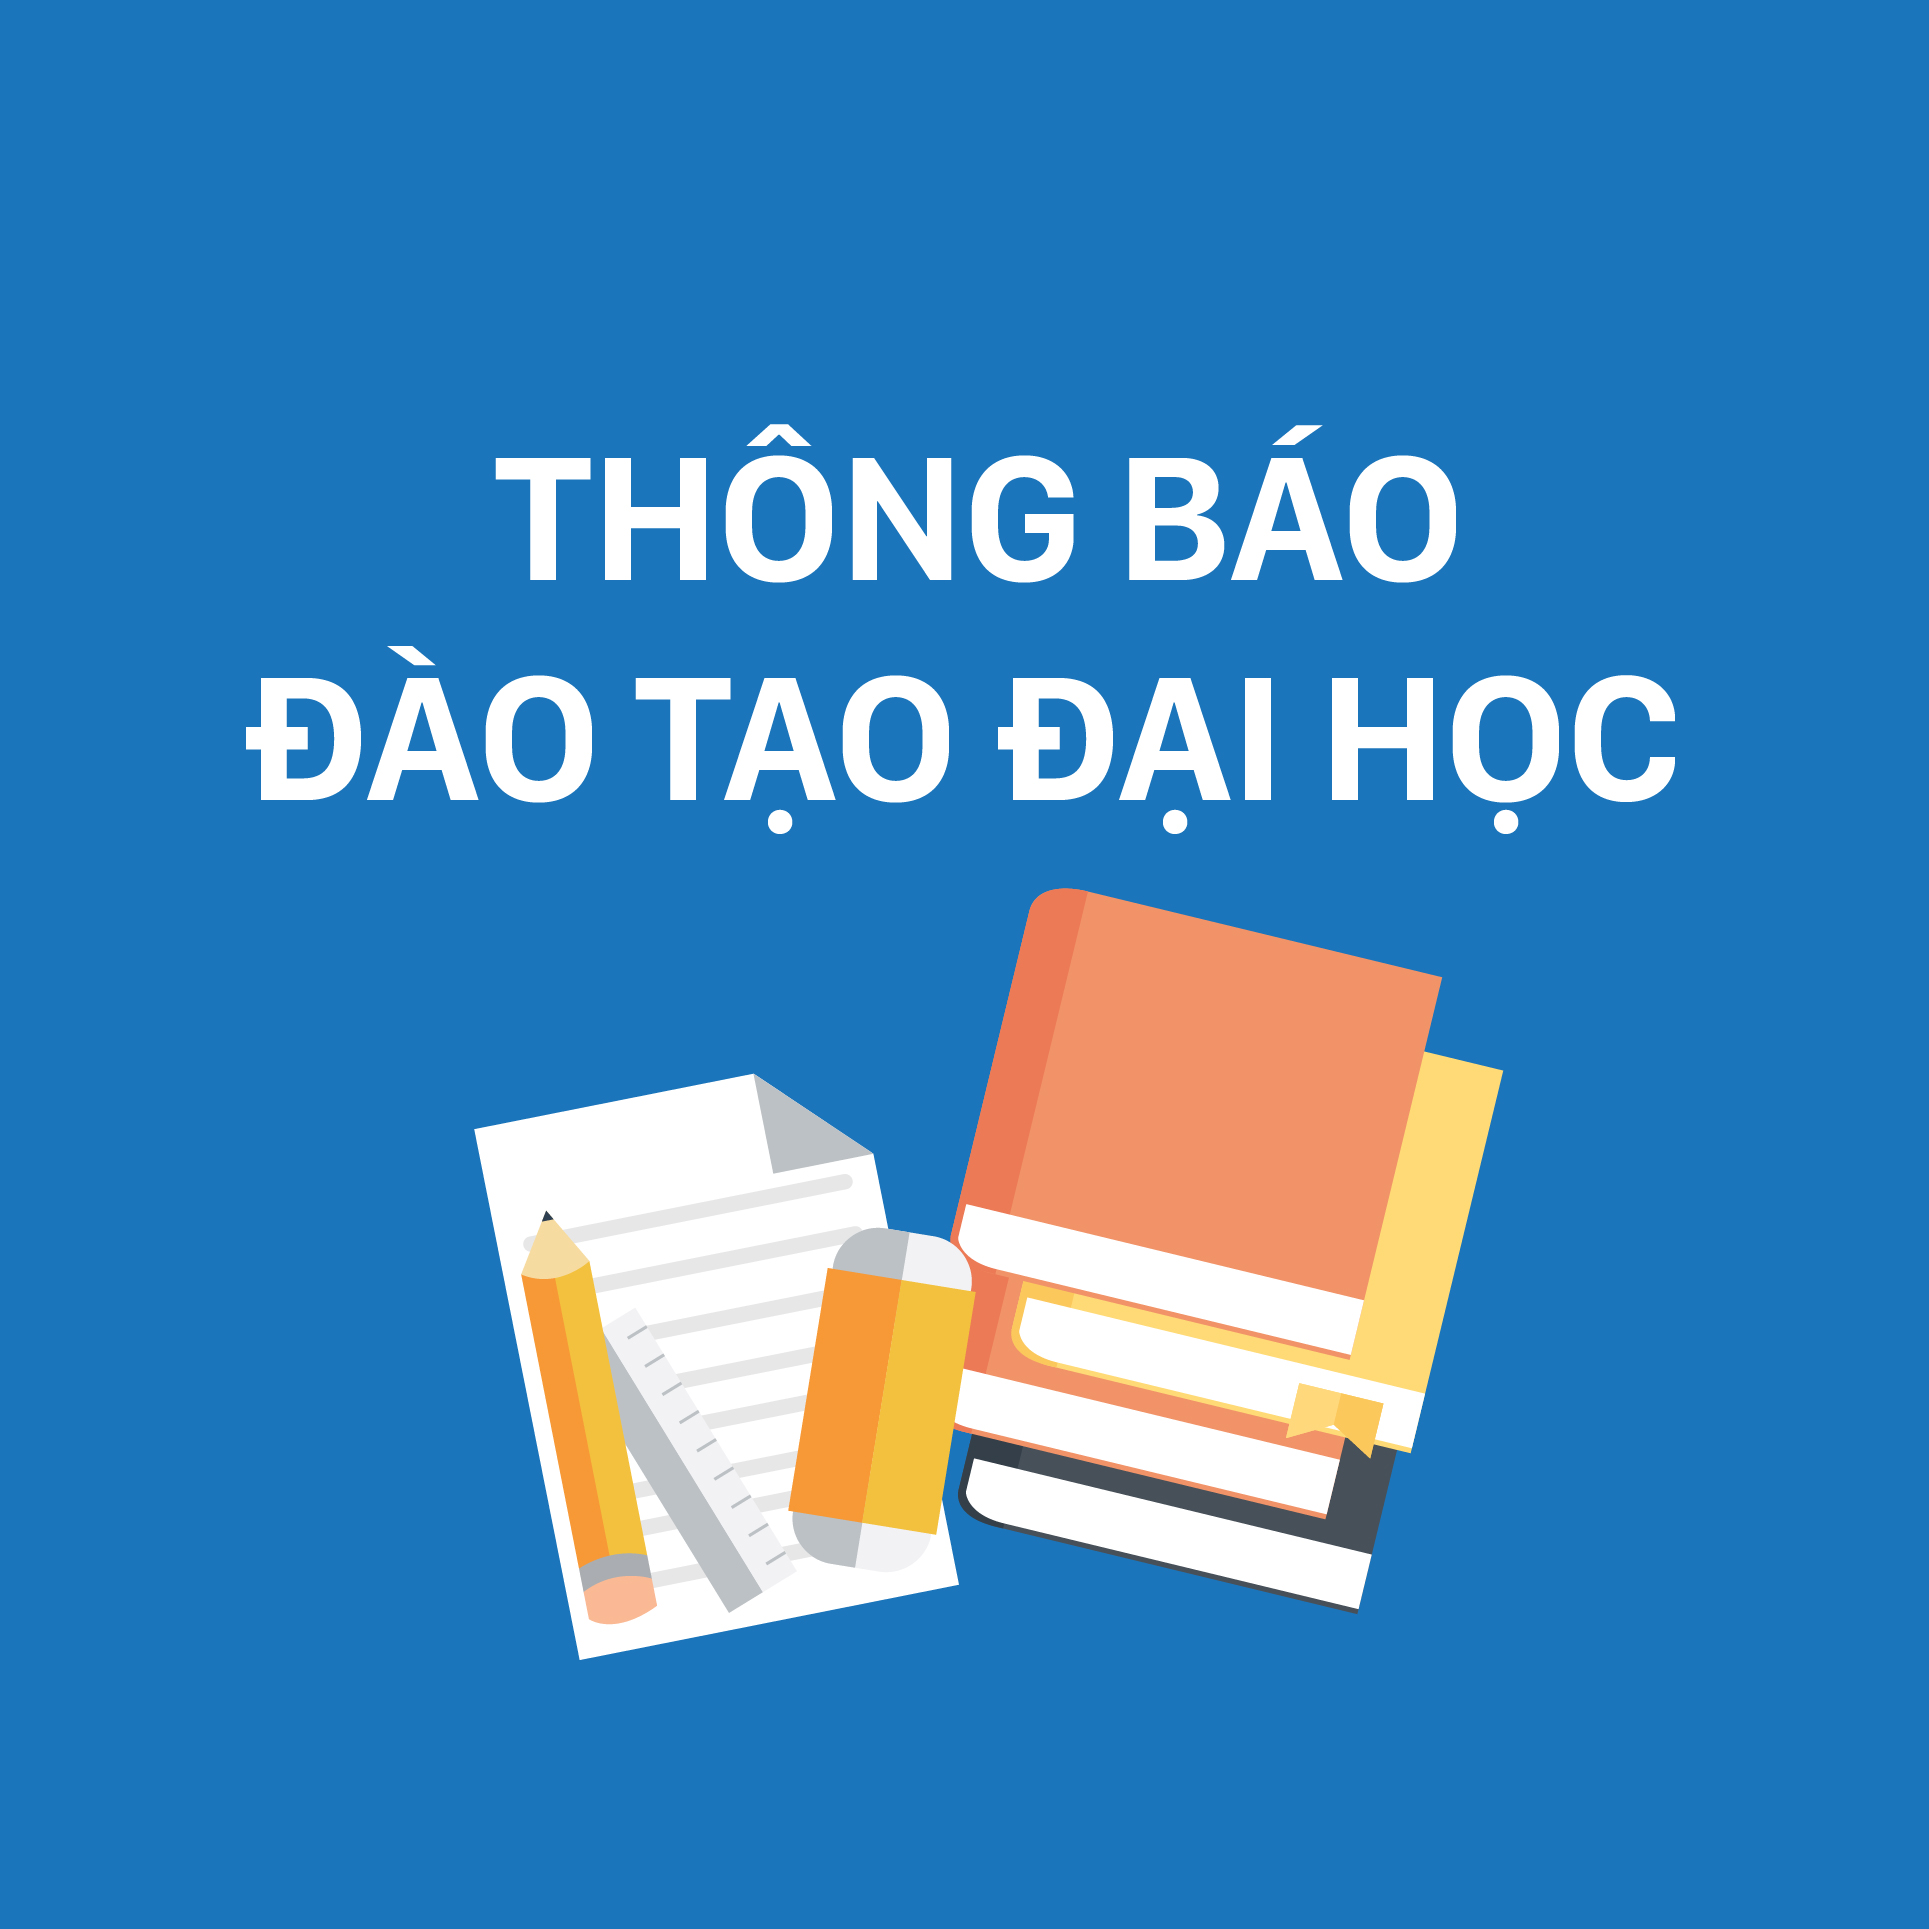 [THÔNG BÁO] Tuyển sinh chương trình đào tạo liên kết cử nhân và thạc sĩ với ĐH Trung tâm Quốc gia, Đài Loan